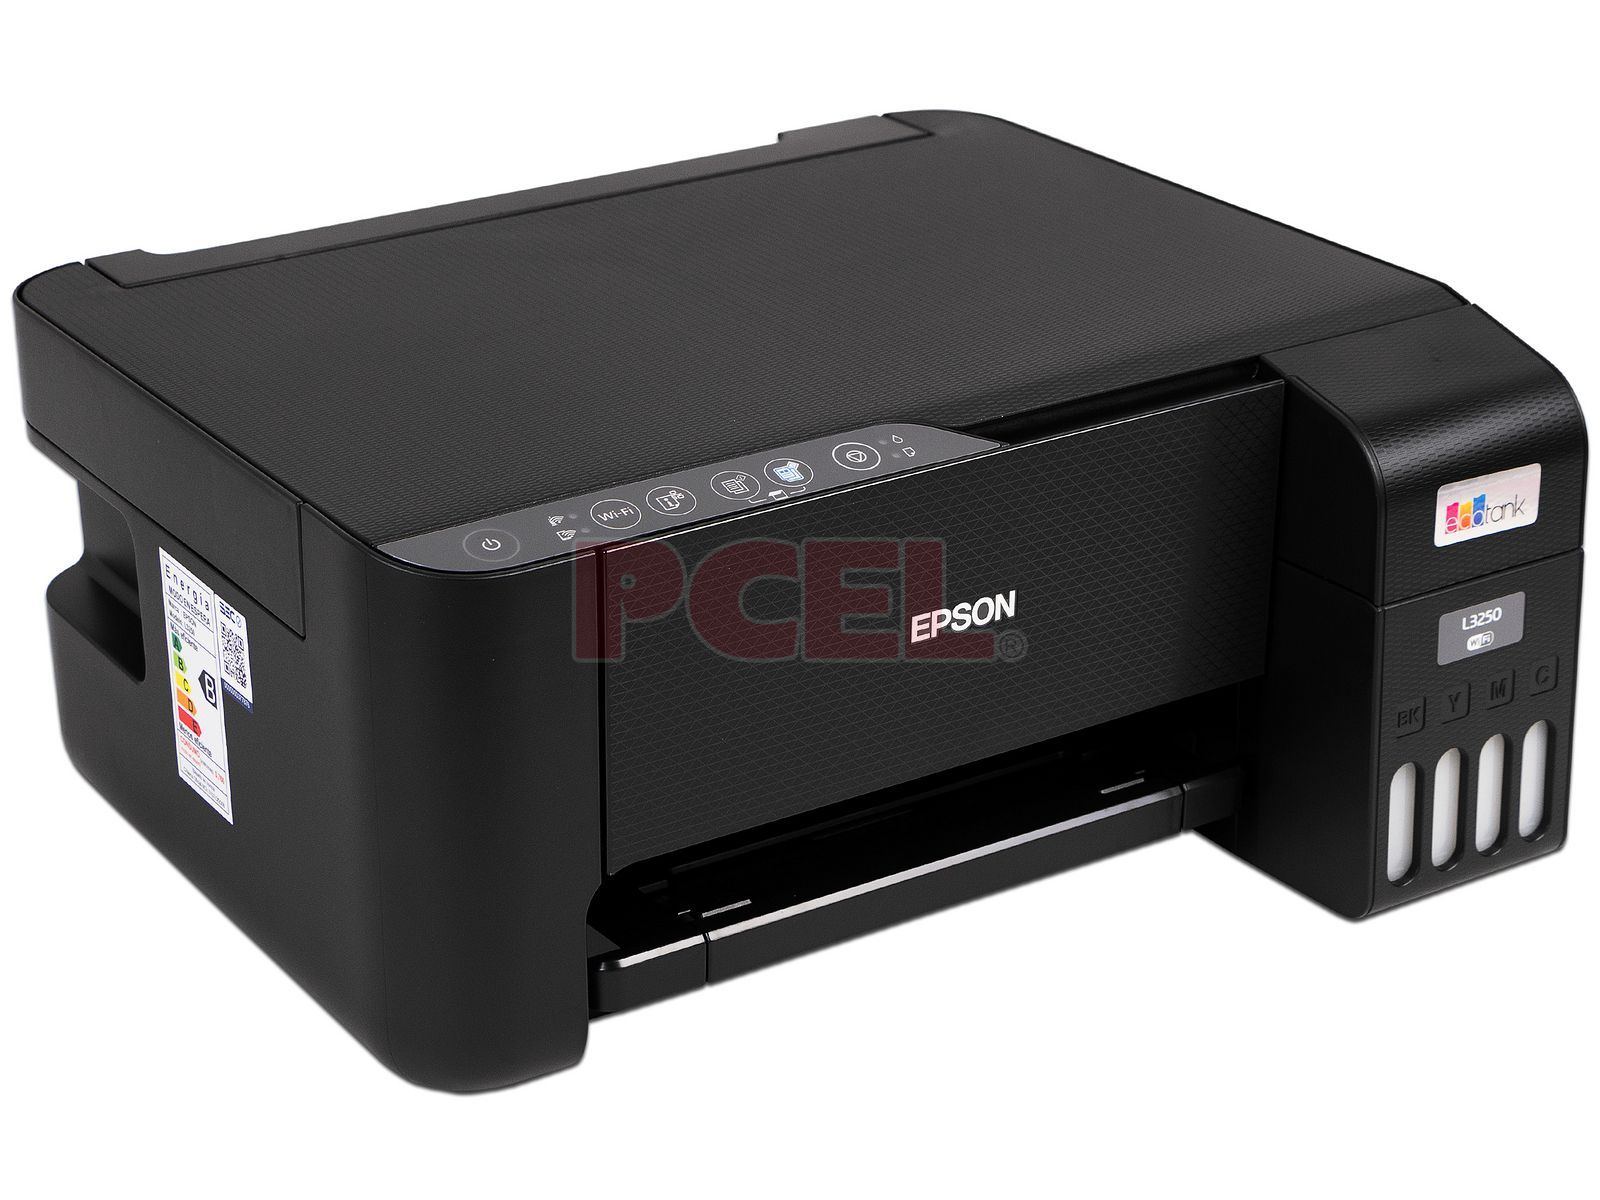 Equipo multifuncion epson ecotank et-3850 tinta 15 ppm bandeja 250 hojas  escaner copiadora impresora